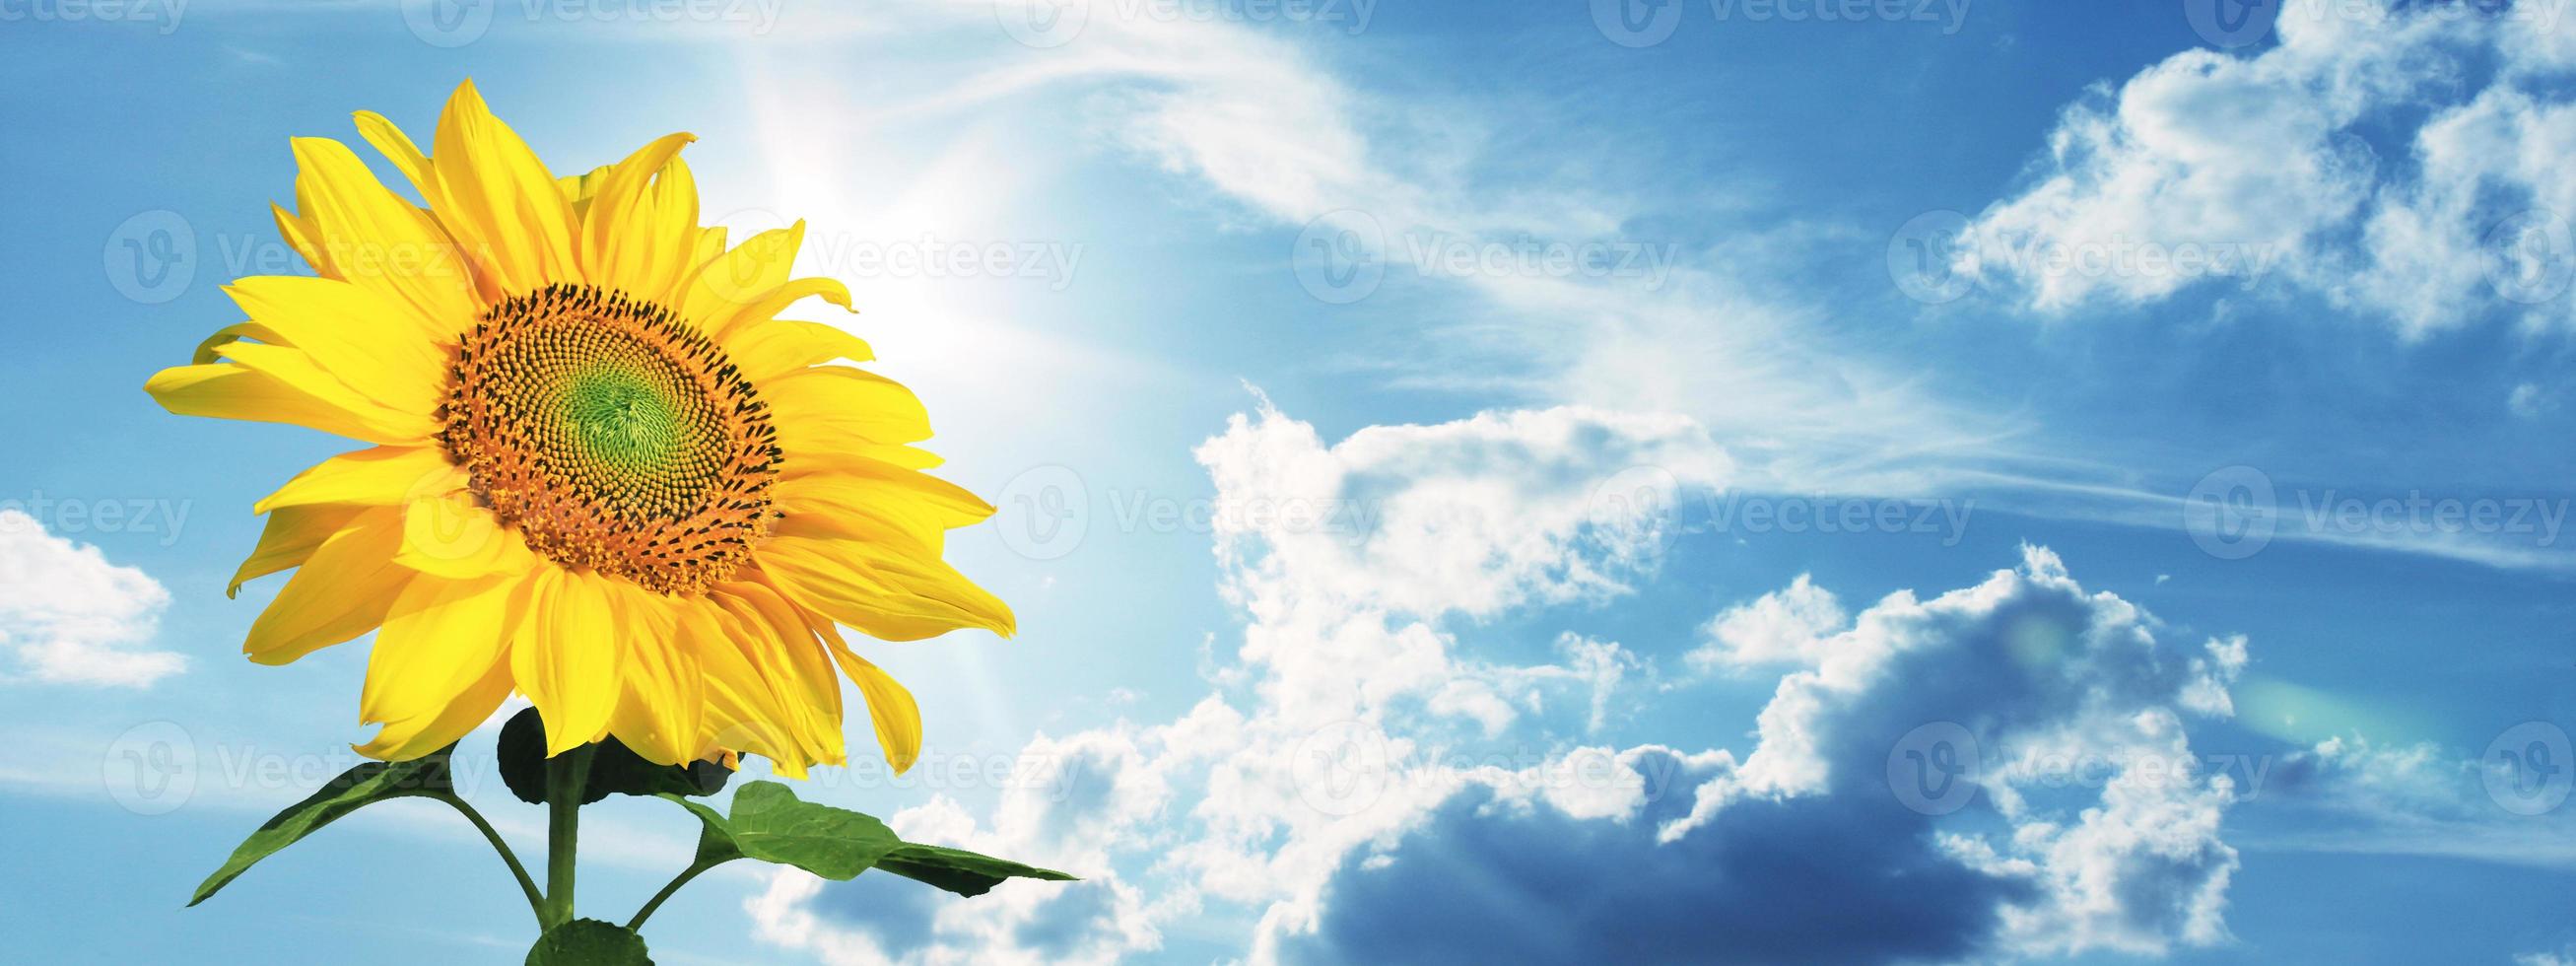 Bereich der blühenden Sonnenblumen auf einem Hintergrund blauer Himmel foto